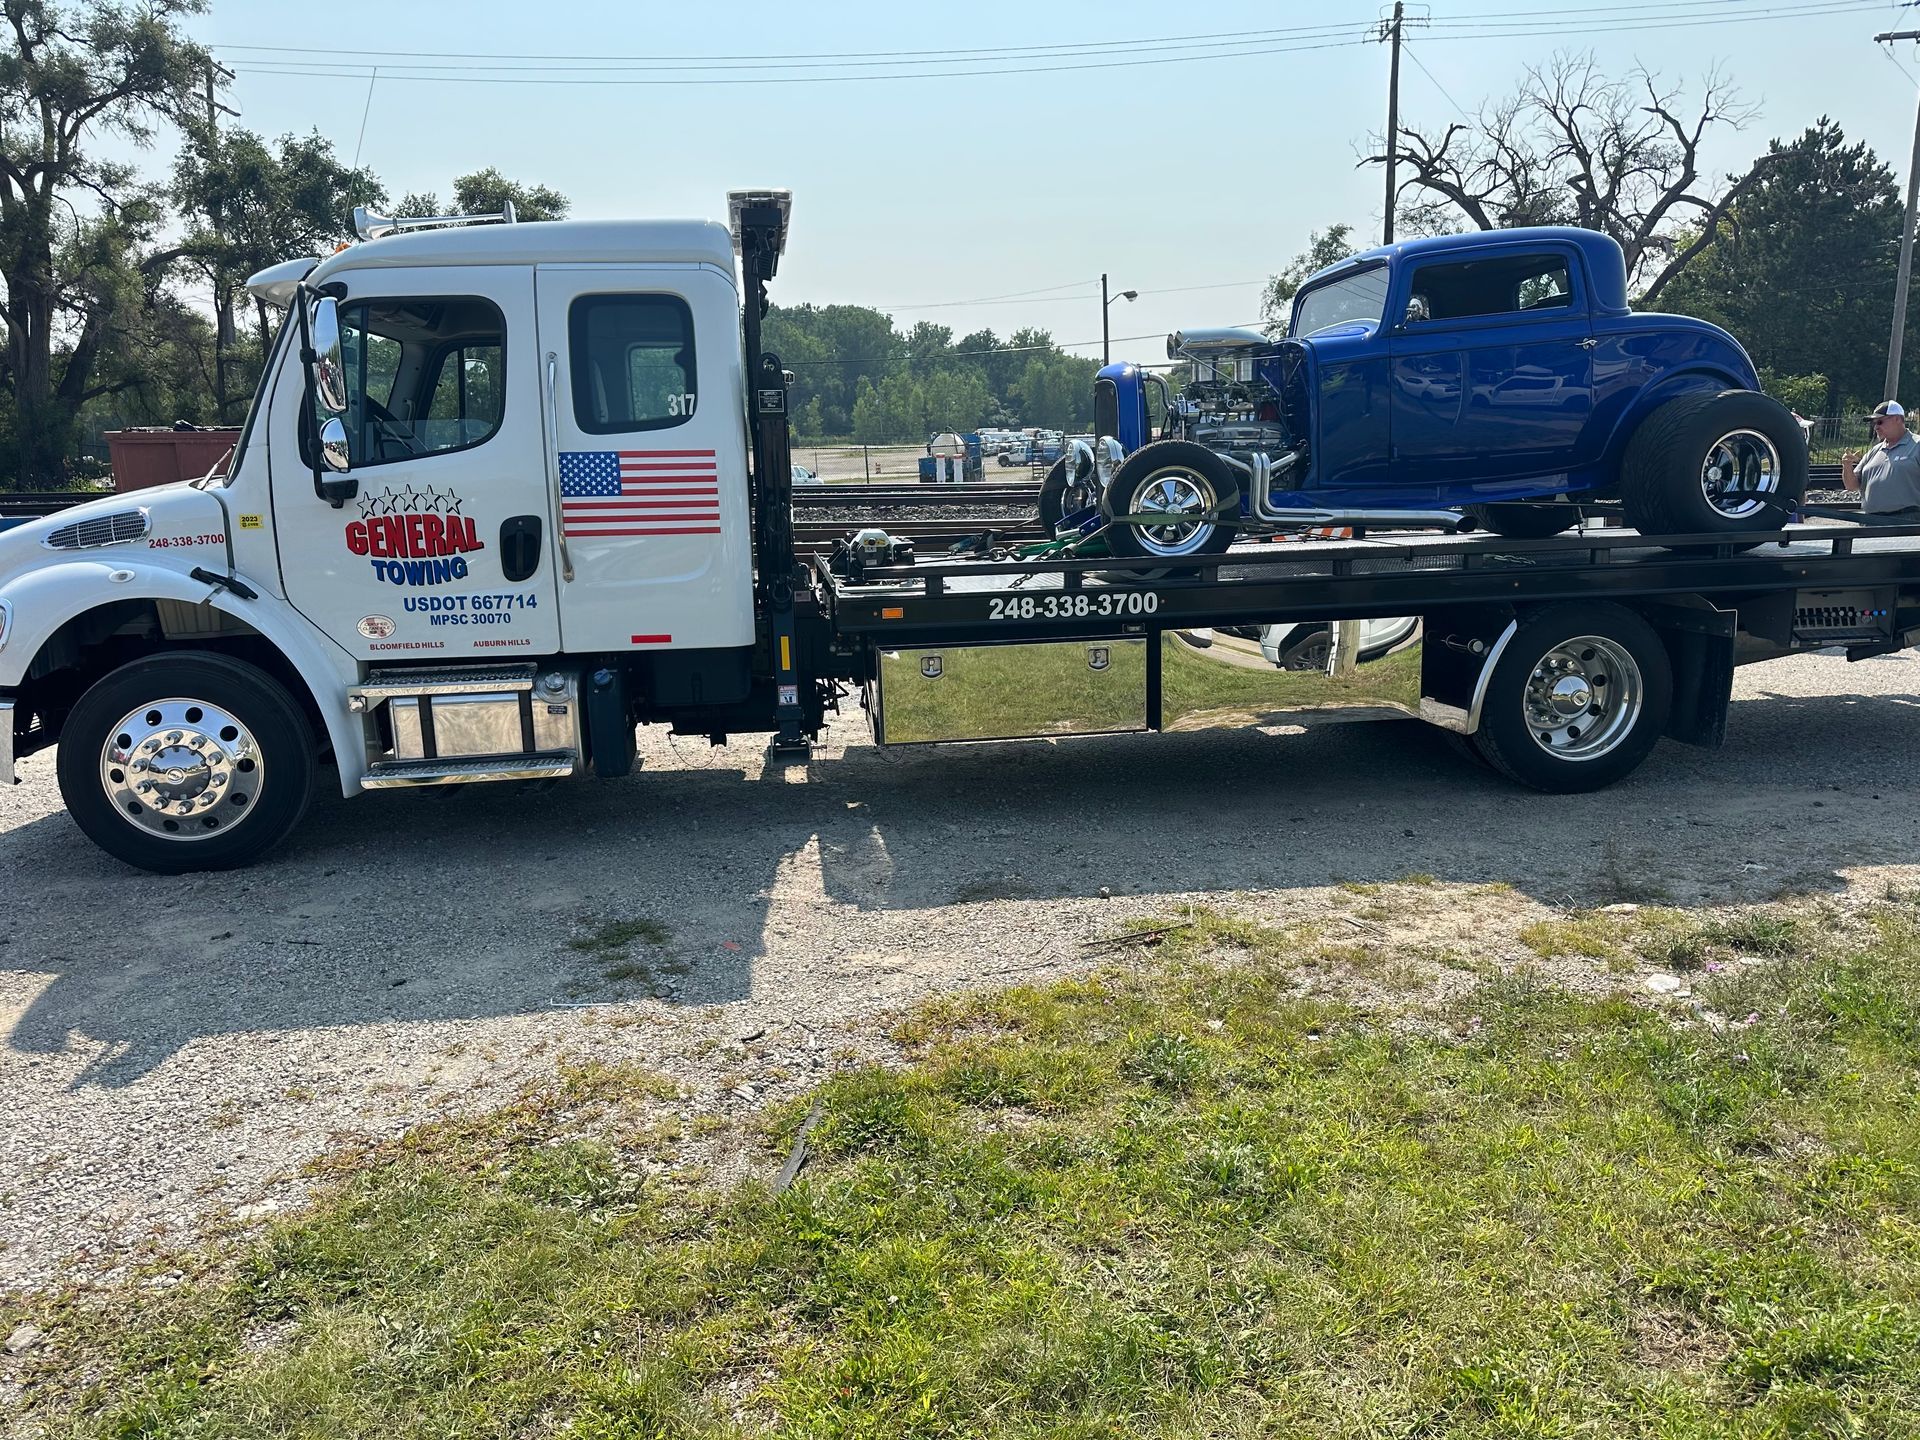 Towing Truck — Auburn Hills, MI — General Towing Auburn Hills